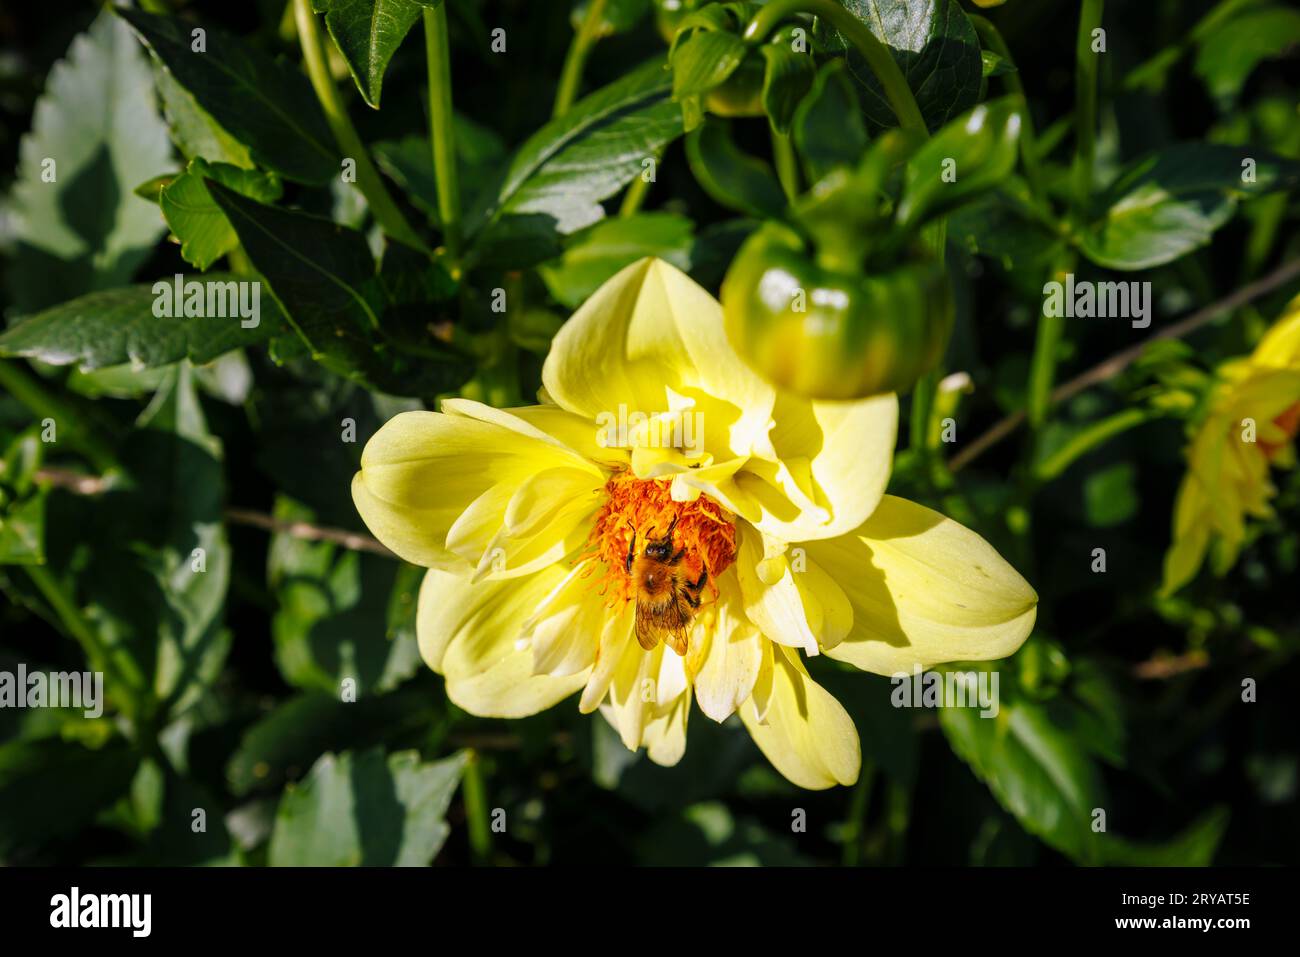 Abeille se nourrissant de nectar provenant des fleurs de disque d'une fleur jaune de Dahlia 'Lemon Sherbet' au RHS Garden Wisley, Surrey, au sud-est de l'Angleterre, au début de l'automne Banque D'Images